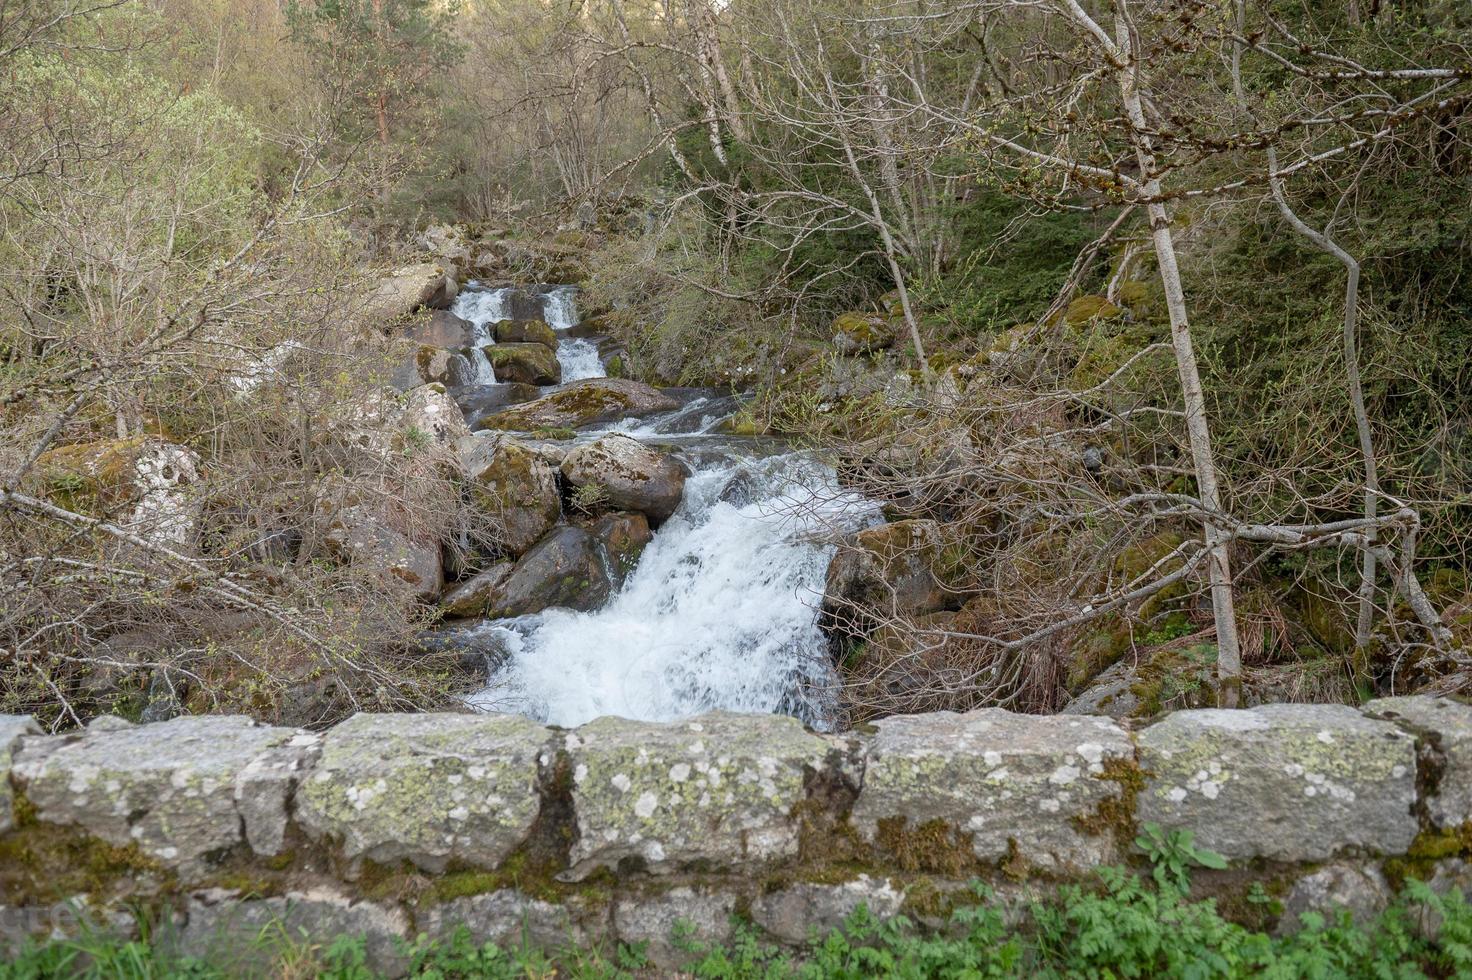 sendero en madriu perafita claror valle en andorra, sitio del patrimonio mundial de la unesco foto